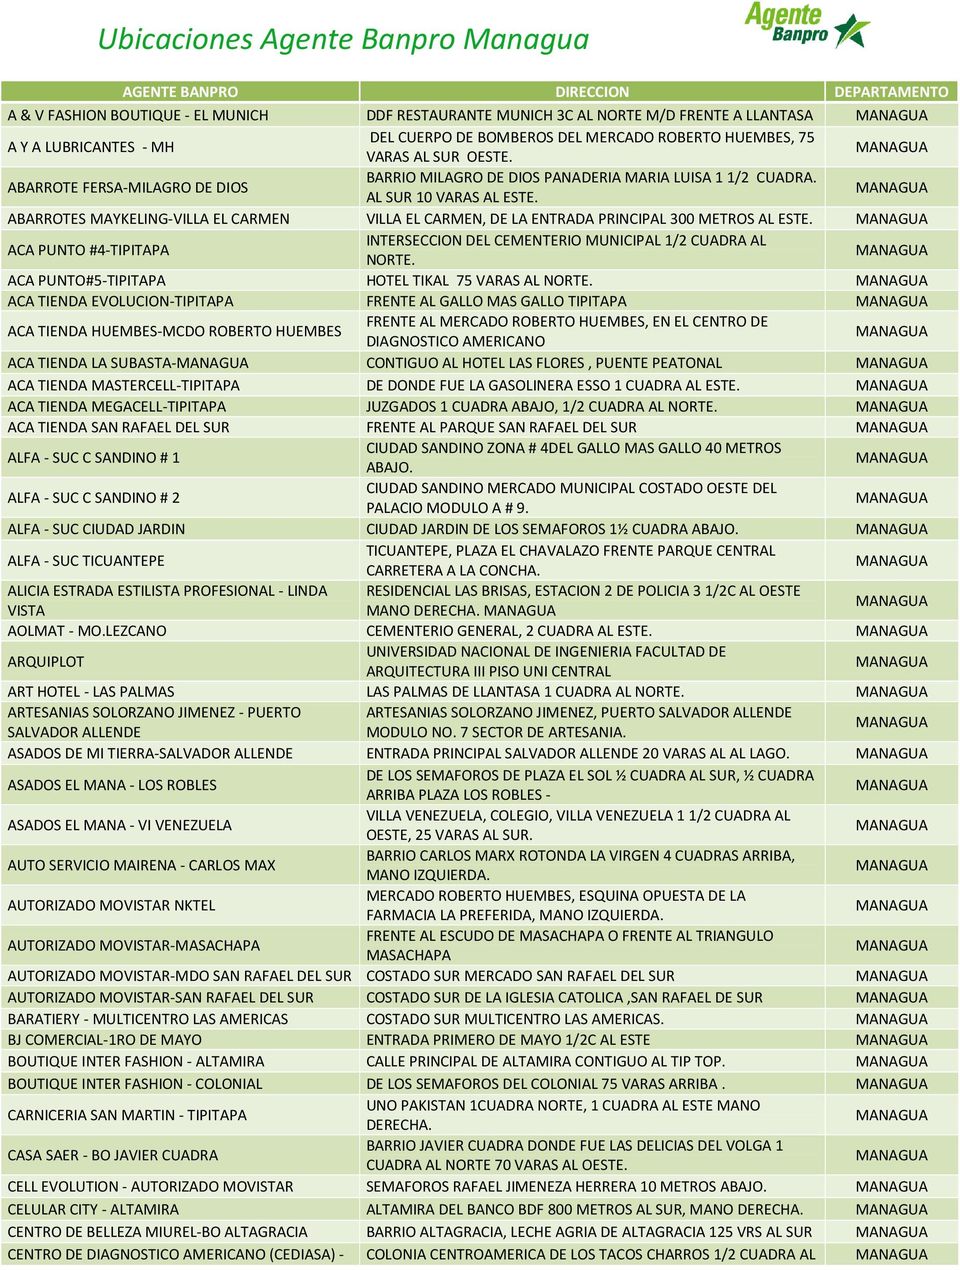 ABARROTES MAYKELING-VILLA EL CARMEN VILLA EL CARMEN, DE LA ENTRADA PRINCIPAL 300 METROS AL ESTE. ACA PUNTO #4-TIPITAPA INTERSECCION DEL CEMENTERIO MUNICIPAL 1/2 CUADRA AL NORTE.